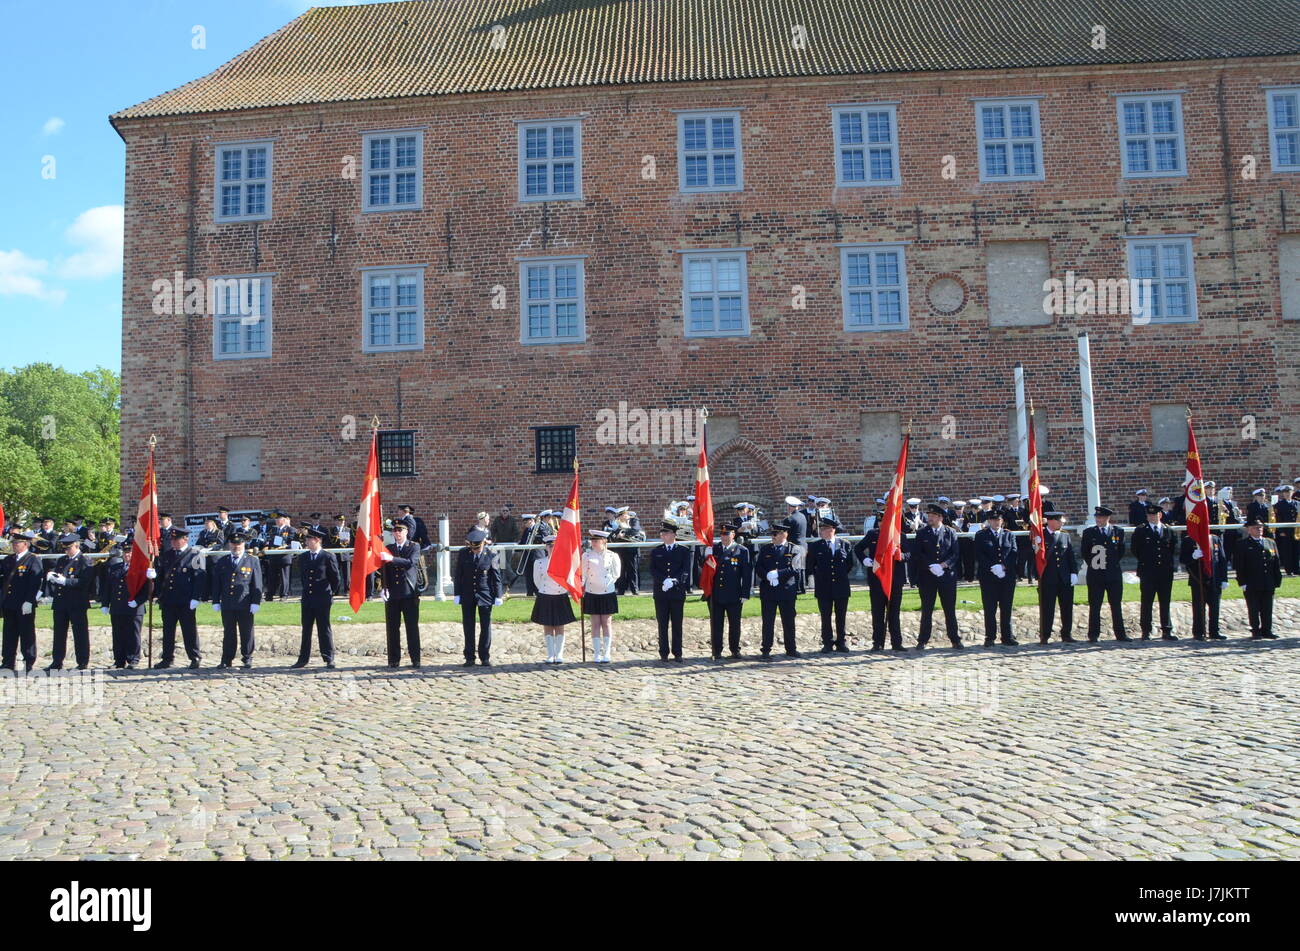 Sonderborg, Denmark - May 25, 2017: The international arrangement named Feuerwehr Sternfahrt 2017 in Sonderborg. Firebrigade orchestras arranged in fr Stock Photo